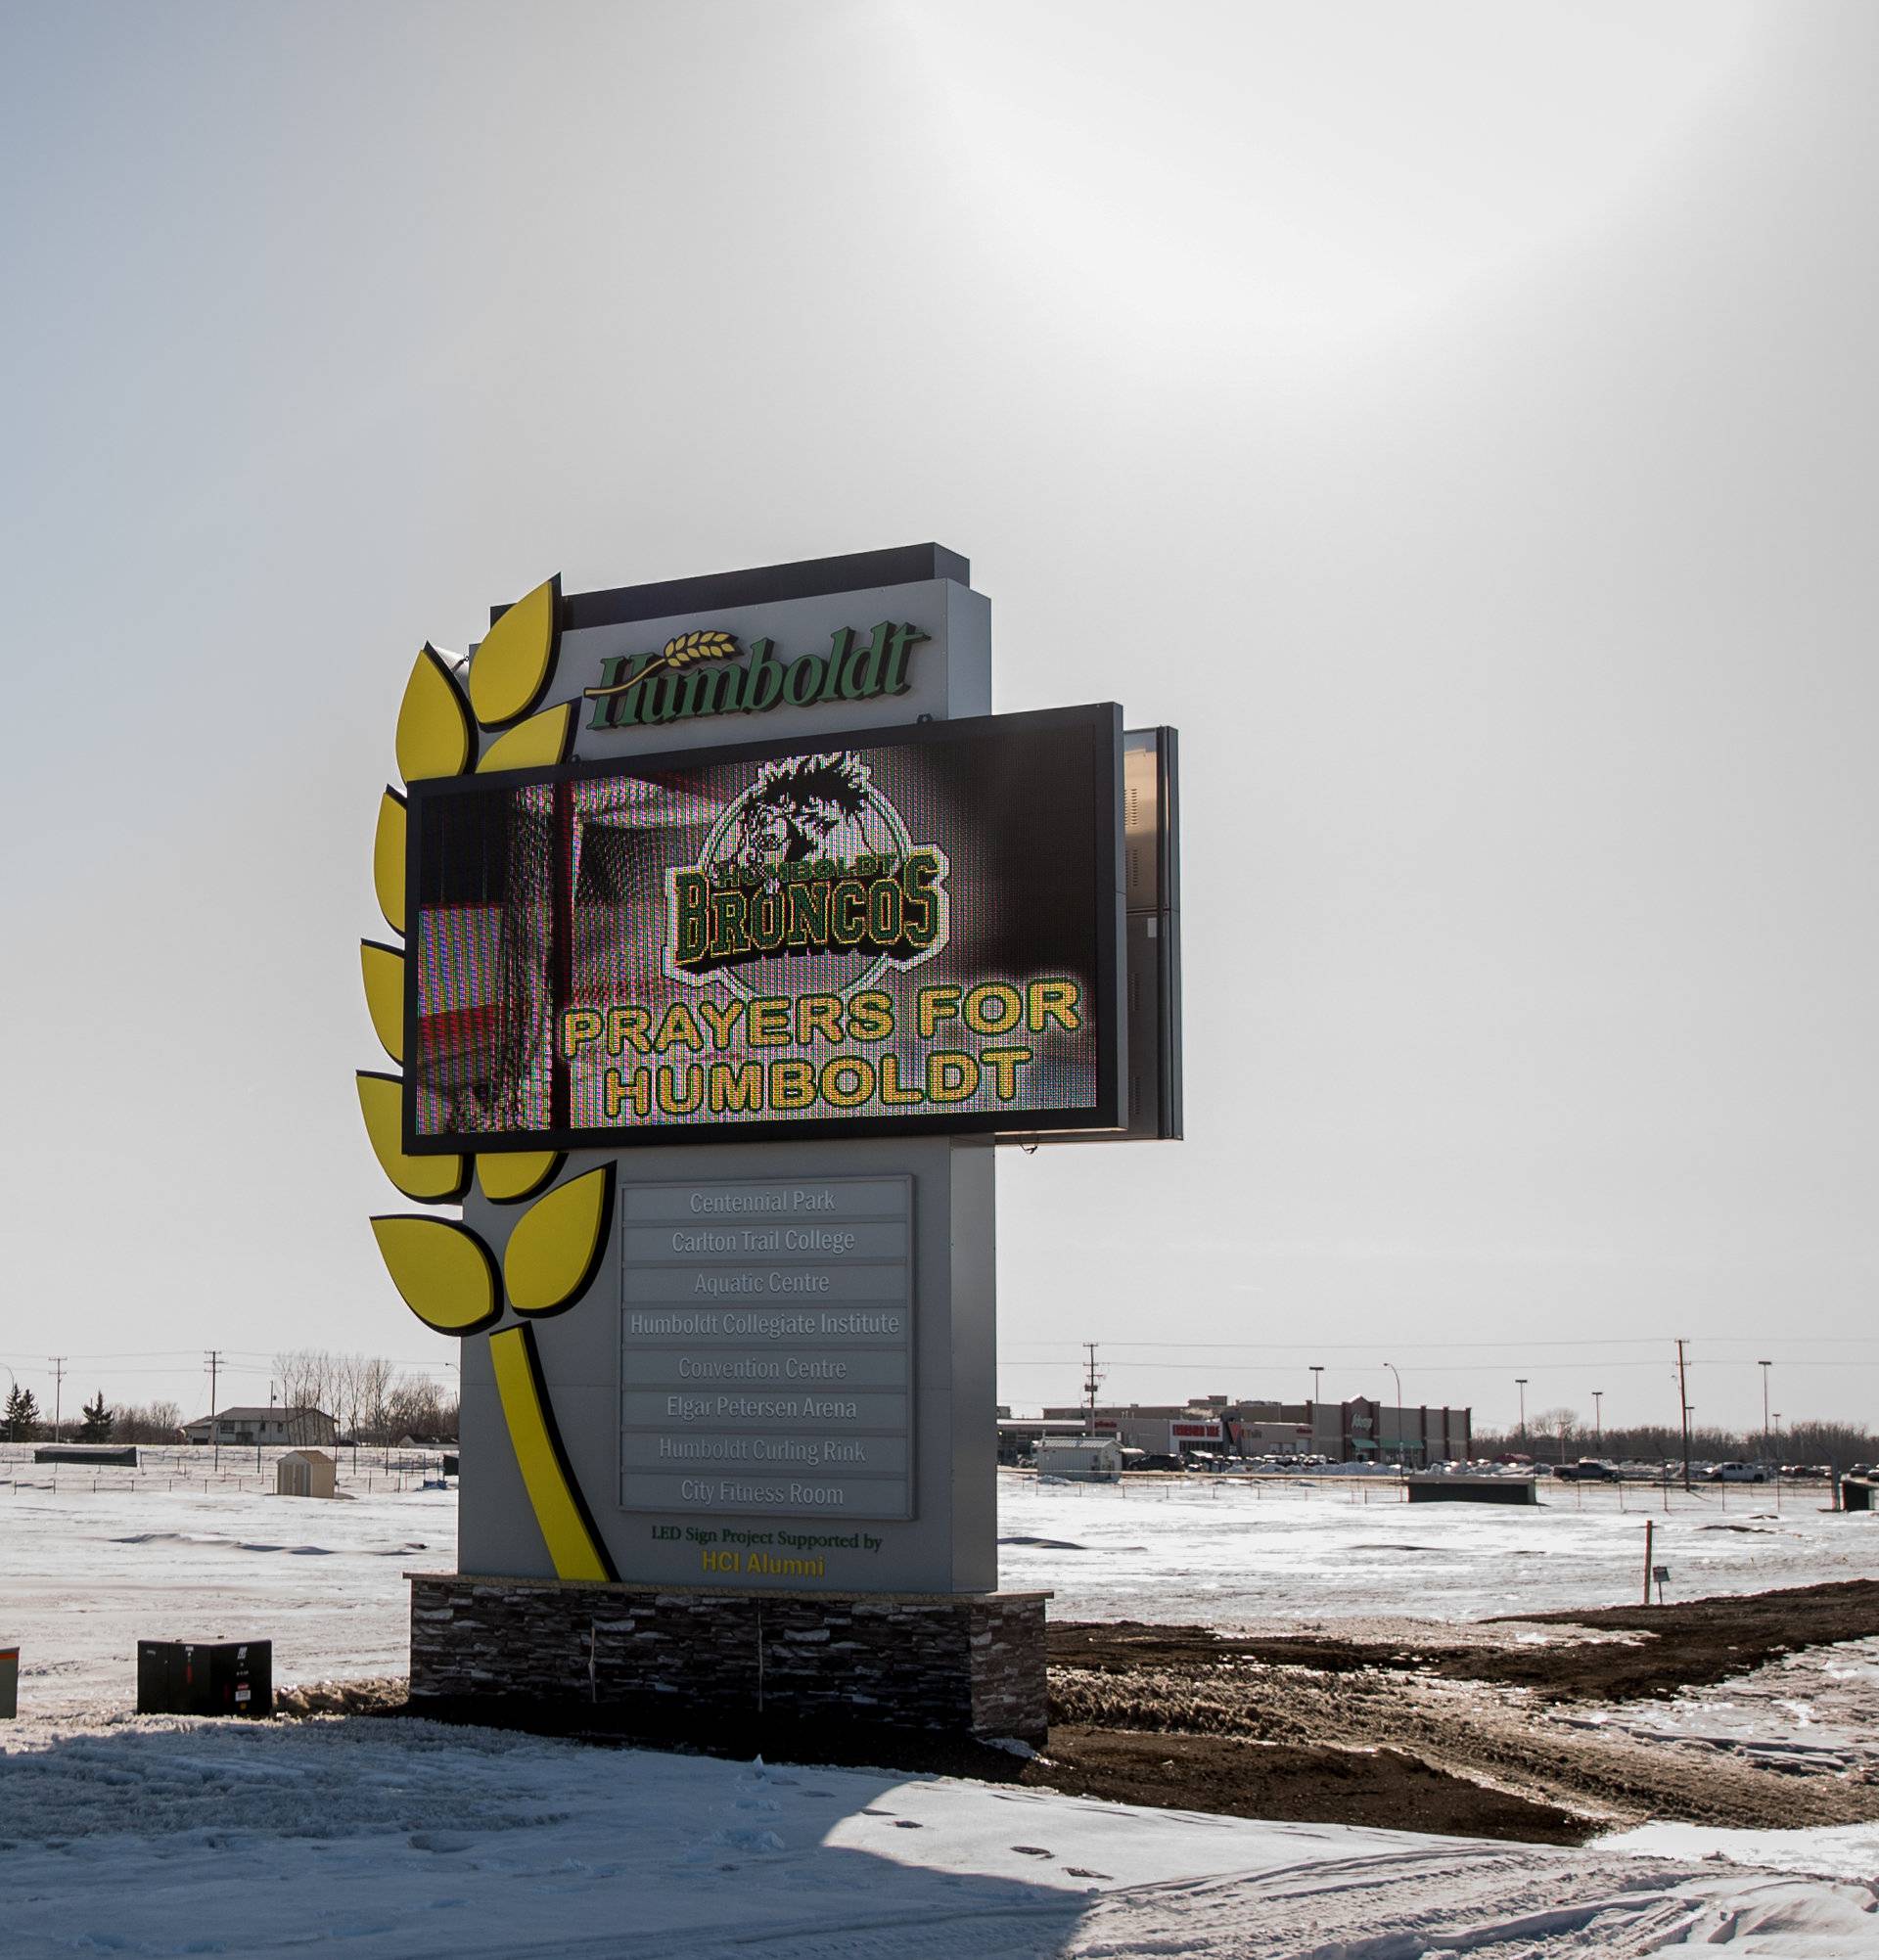 A digital billboard expresses support for the Humboldt Broncos in Humboldt, Saskatchewan